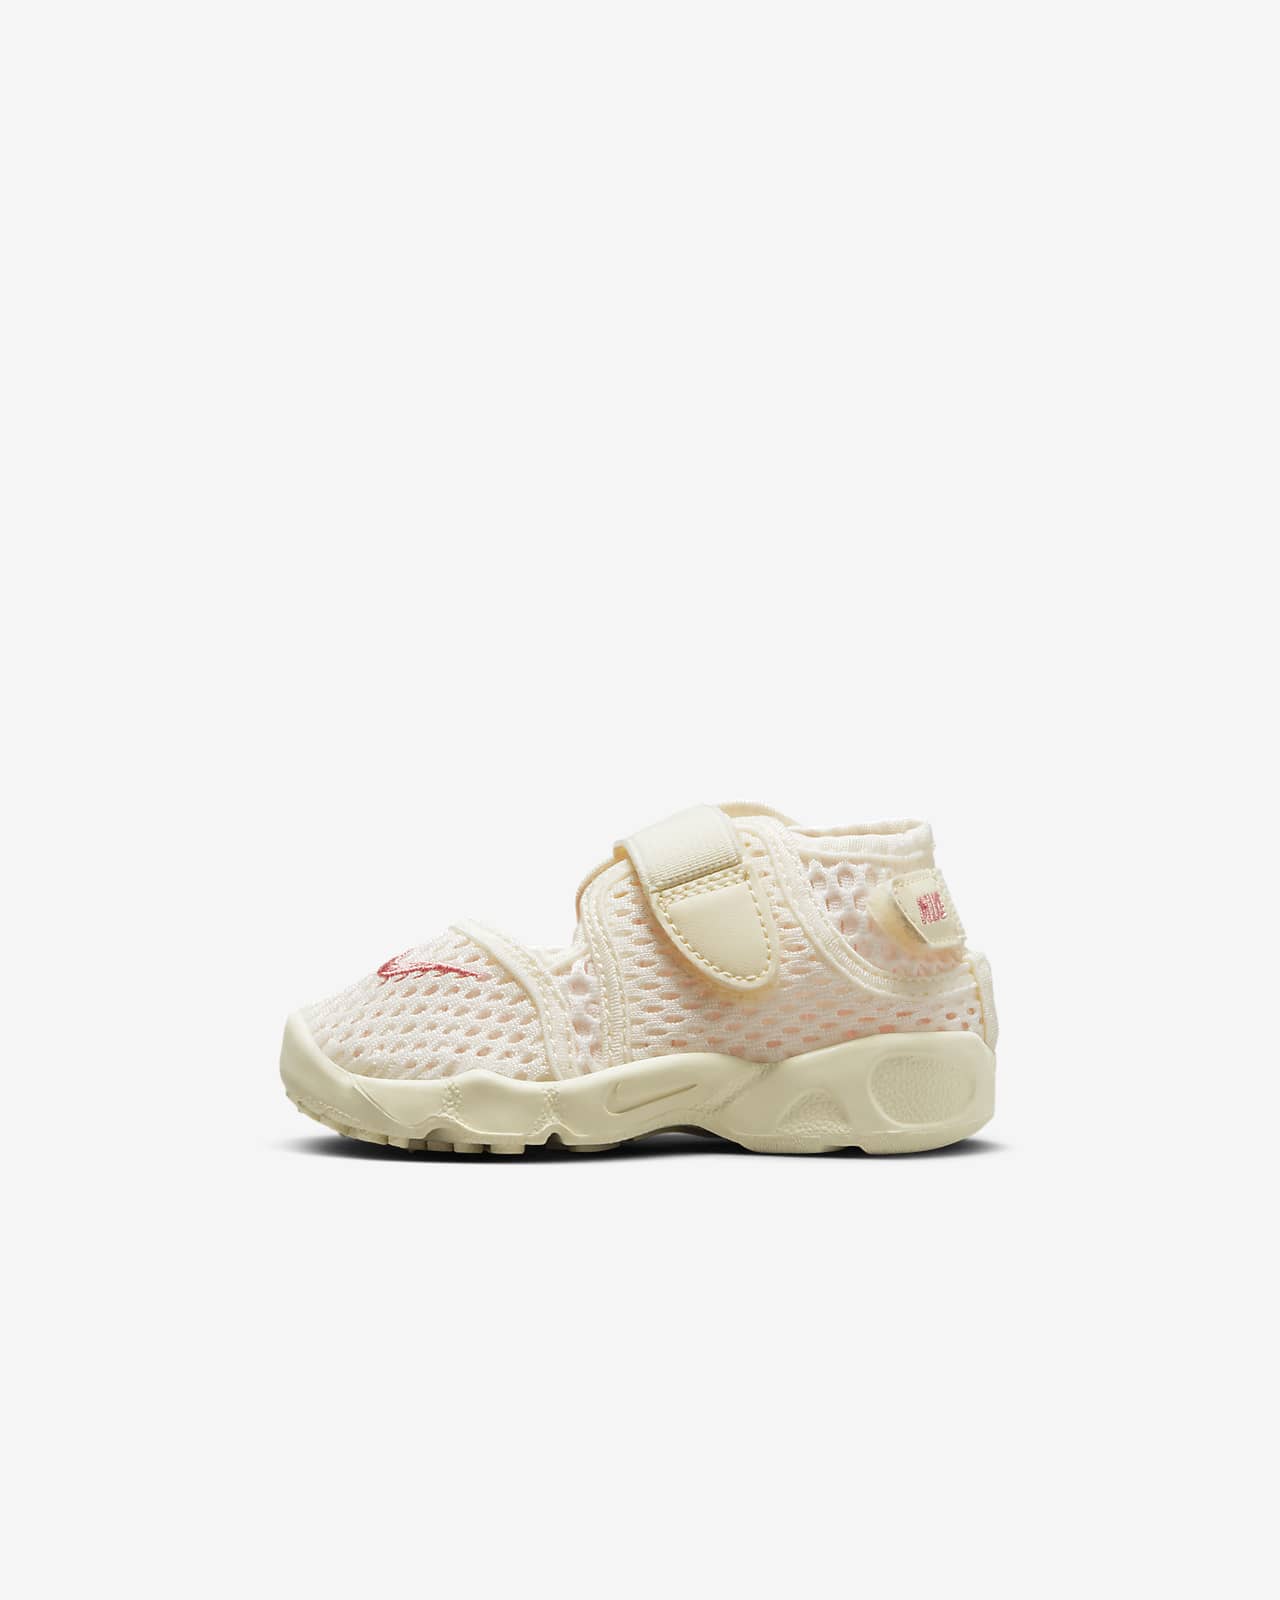 Nike Rift 2 Baby/Toddler Shoes. Nike SG